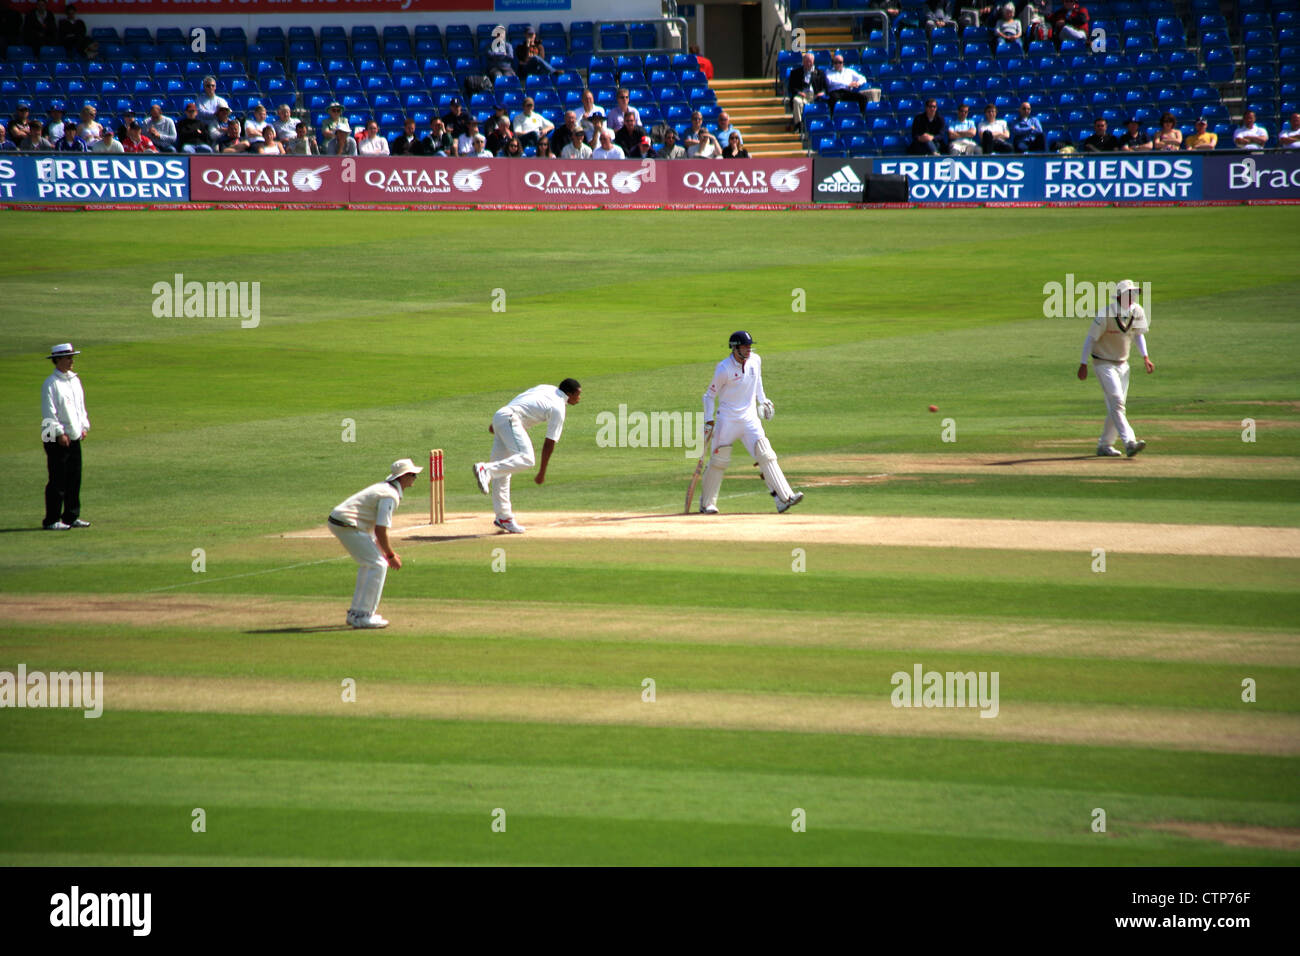 Test-match de cricket entre l'Angleterre et l'Afrique du Sud a joué au terrain de cricket de Headingly, Yorkshire, Angleterre, Royaume-Uni 2107 2008 Banque D'Images